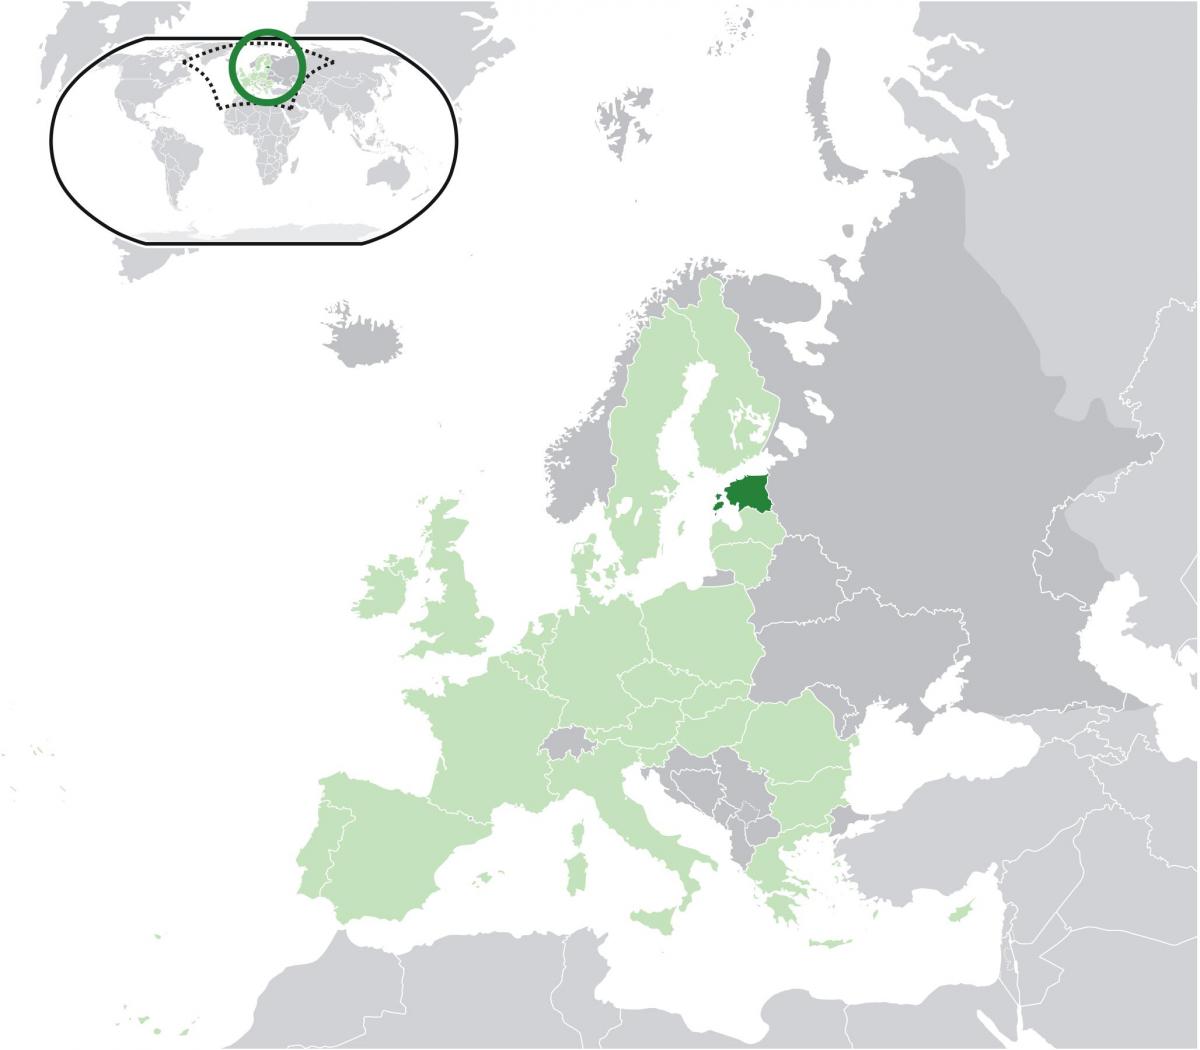 L'estonie sur la carte de l'europe